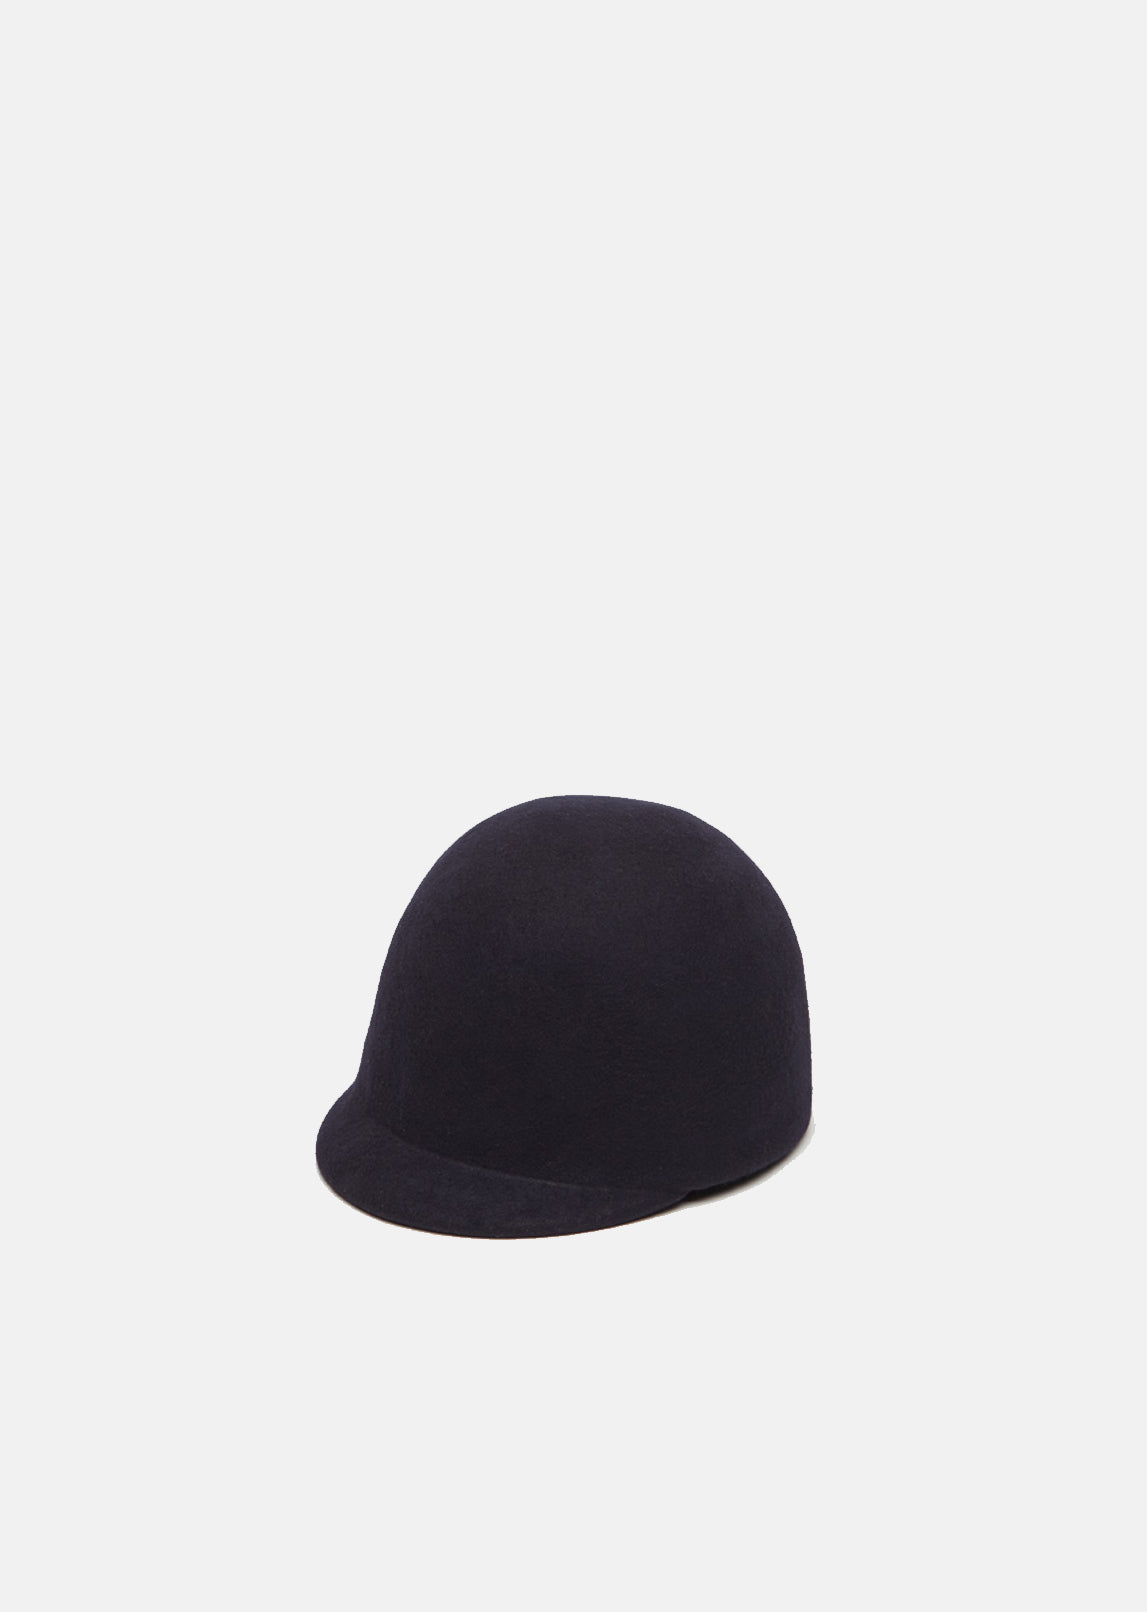 Felt Toque Hat by Sacai - La Garçonne